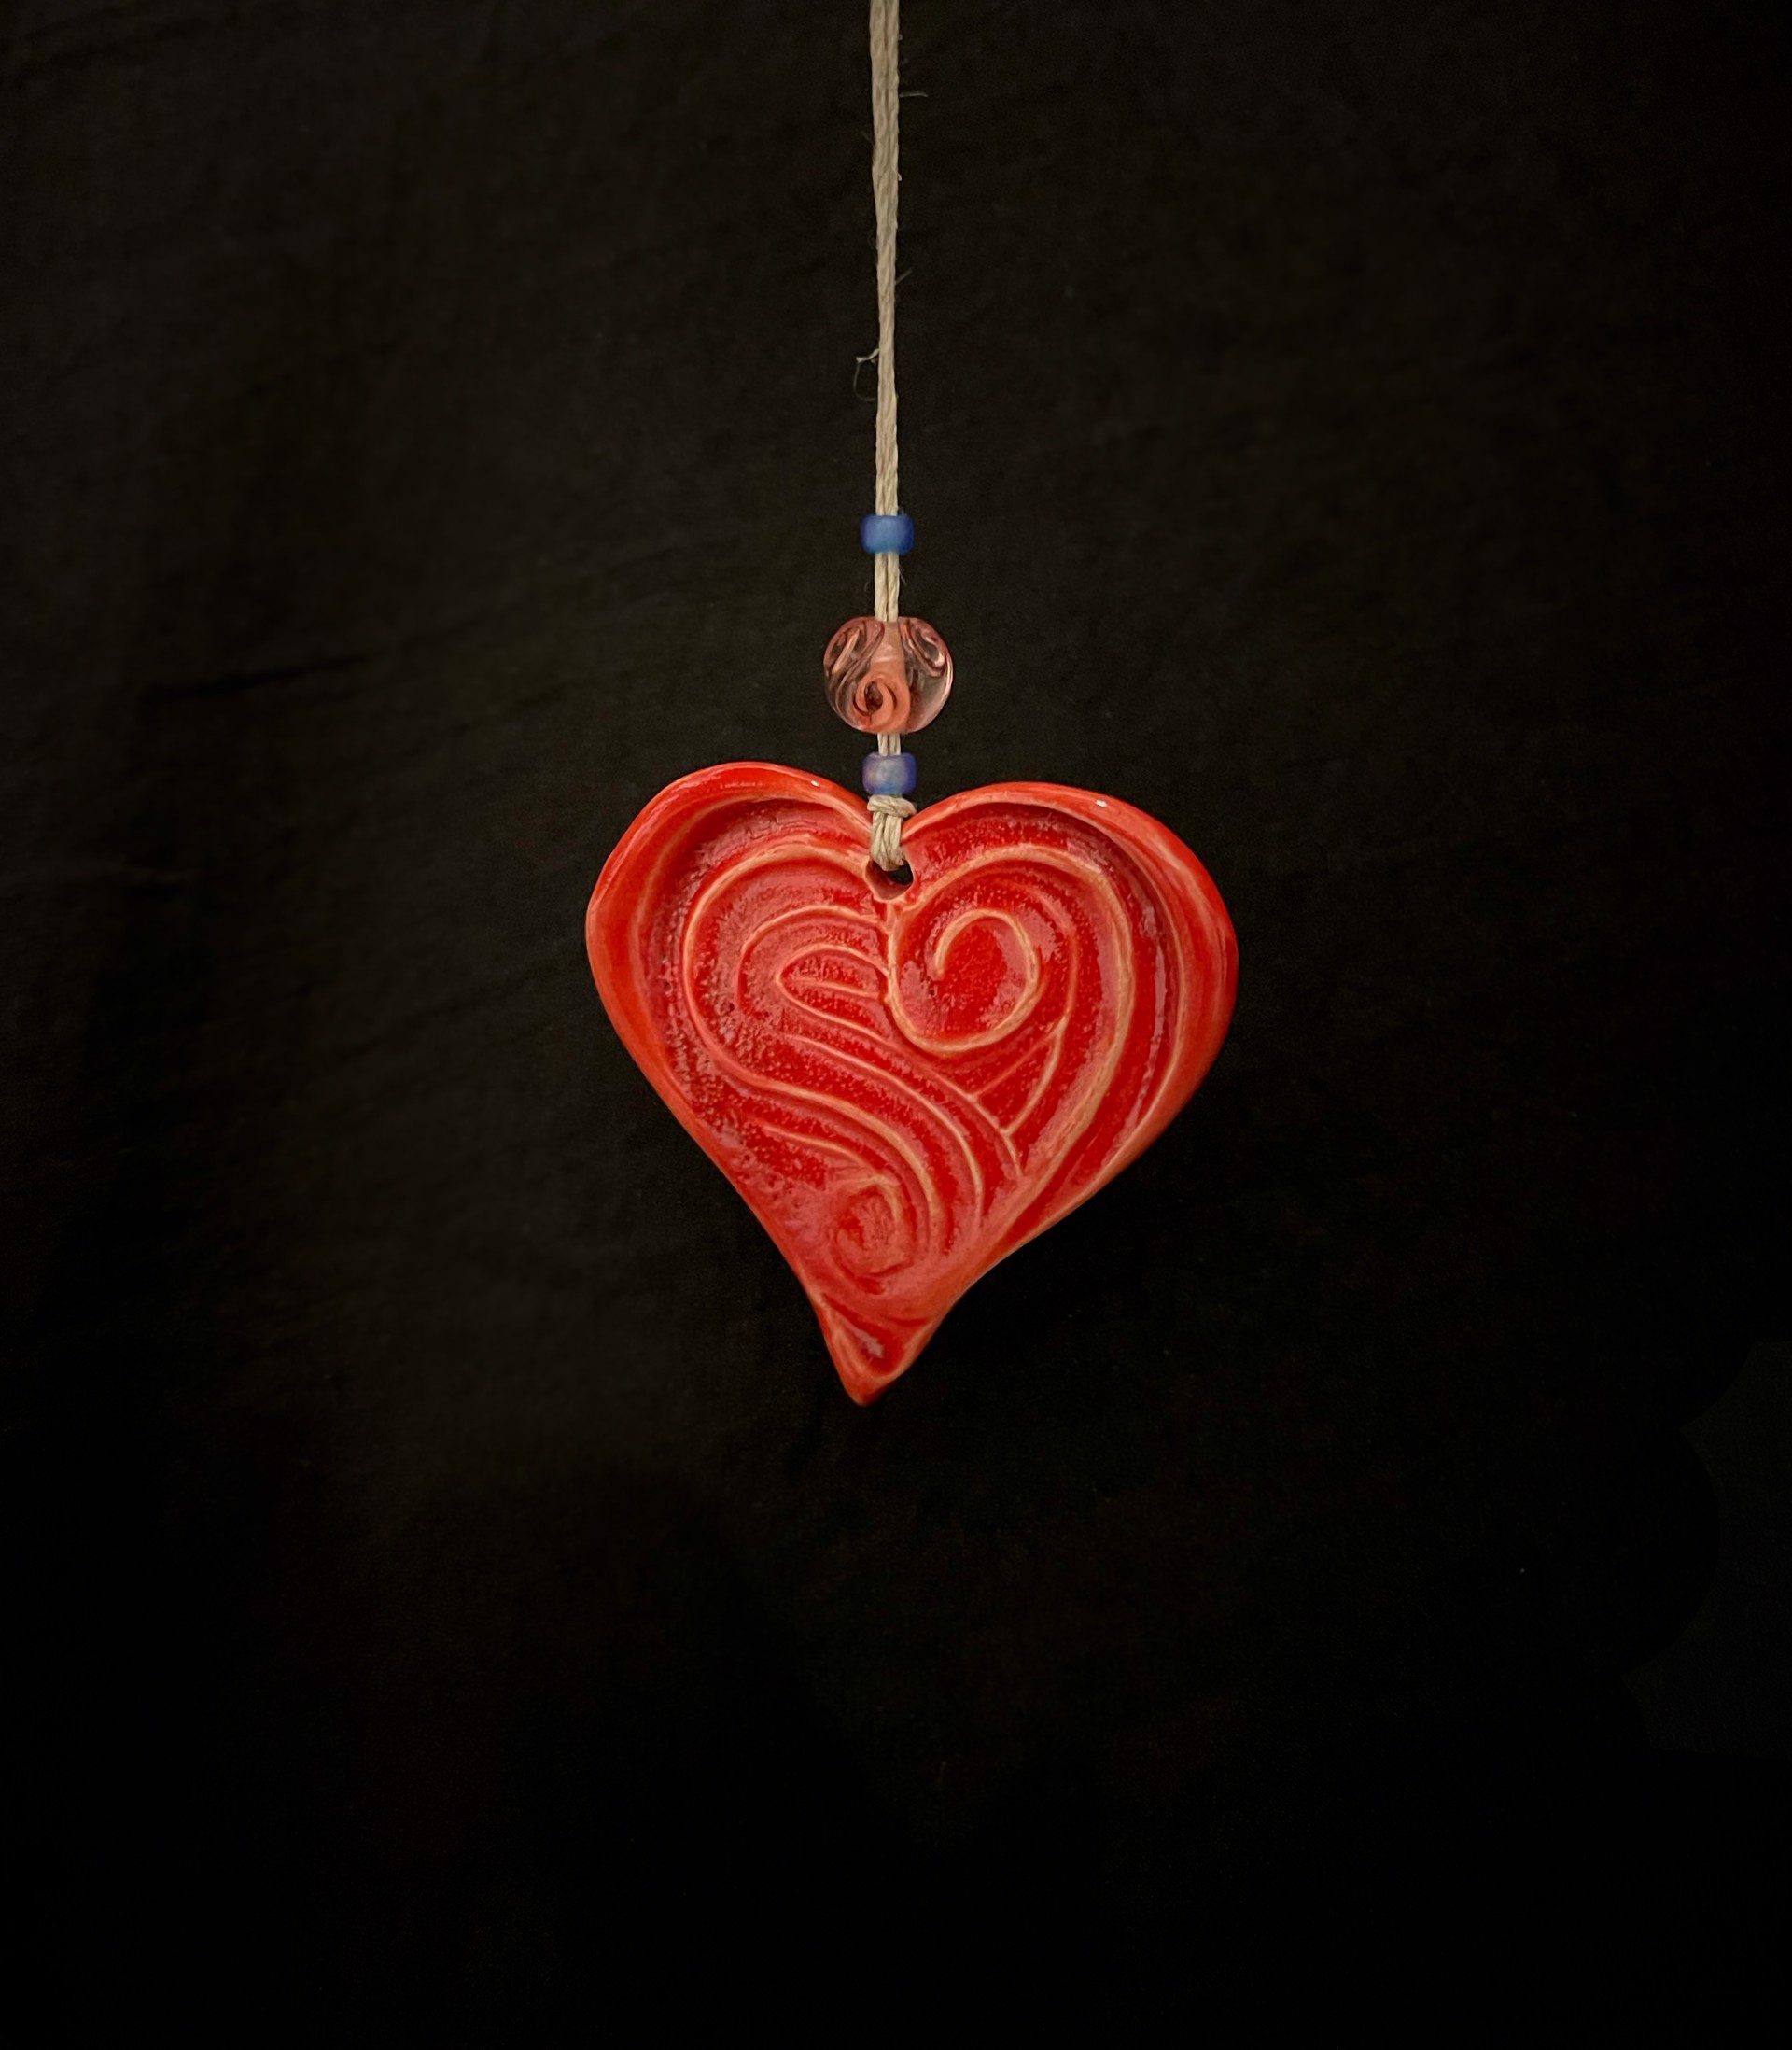 Red Heart Ornament by Karen Heathman